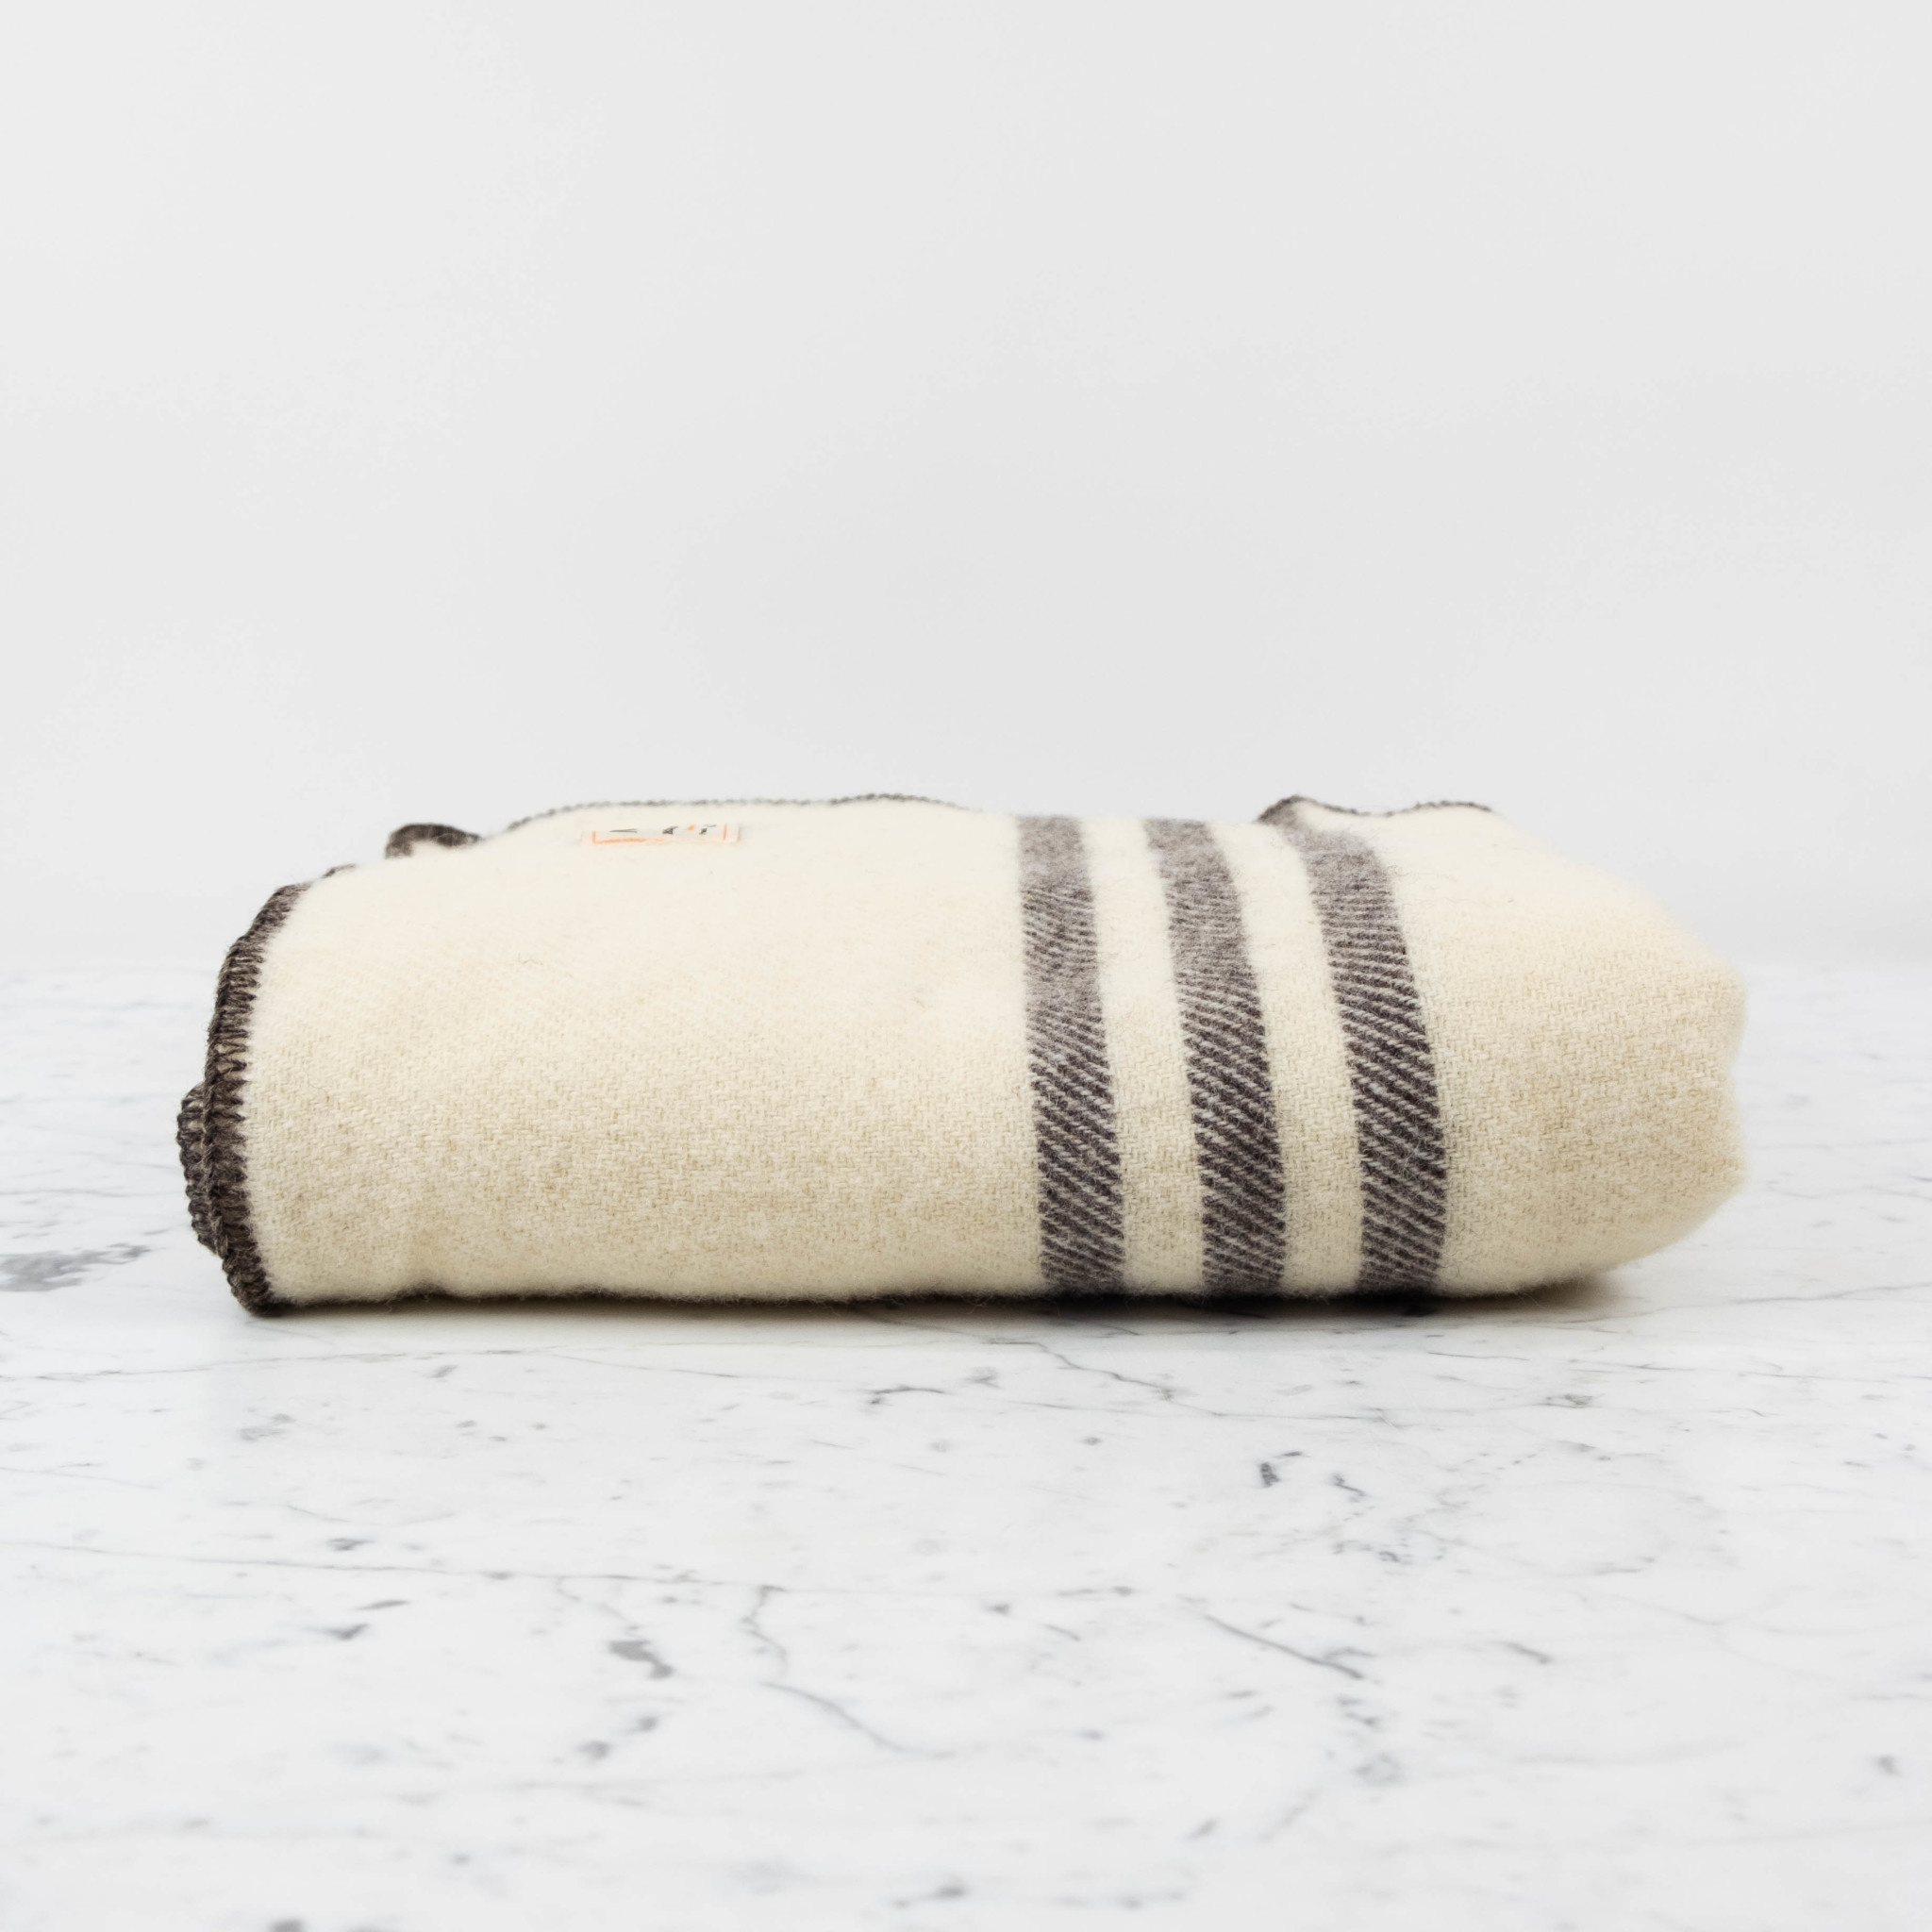 MacAusland MacAusland Wool Lap Blanket - Ivory with Dark Grey Stripes - 50 x 60"